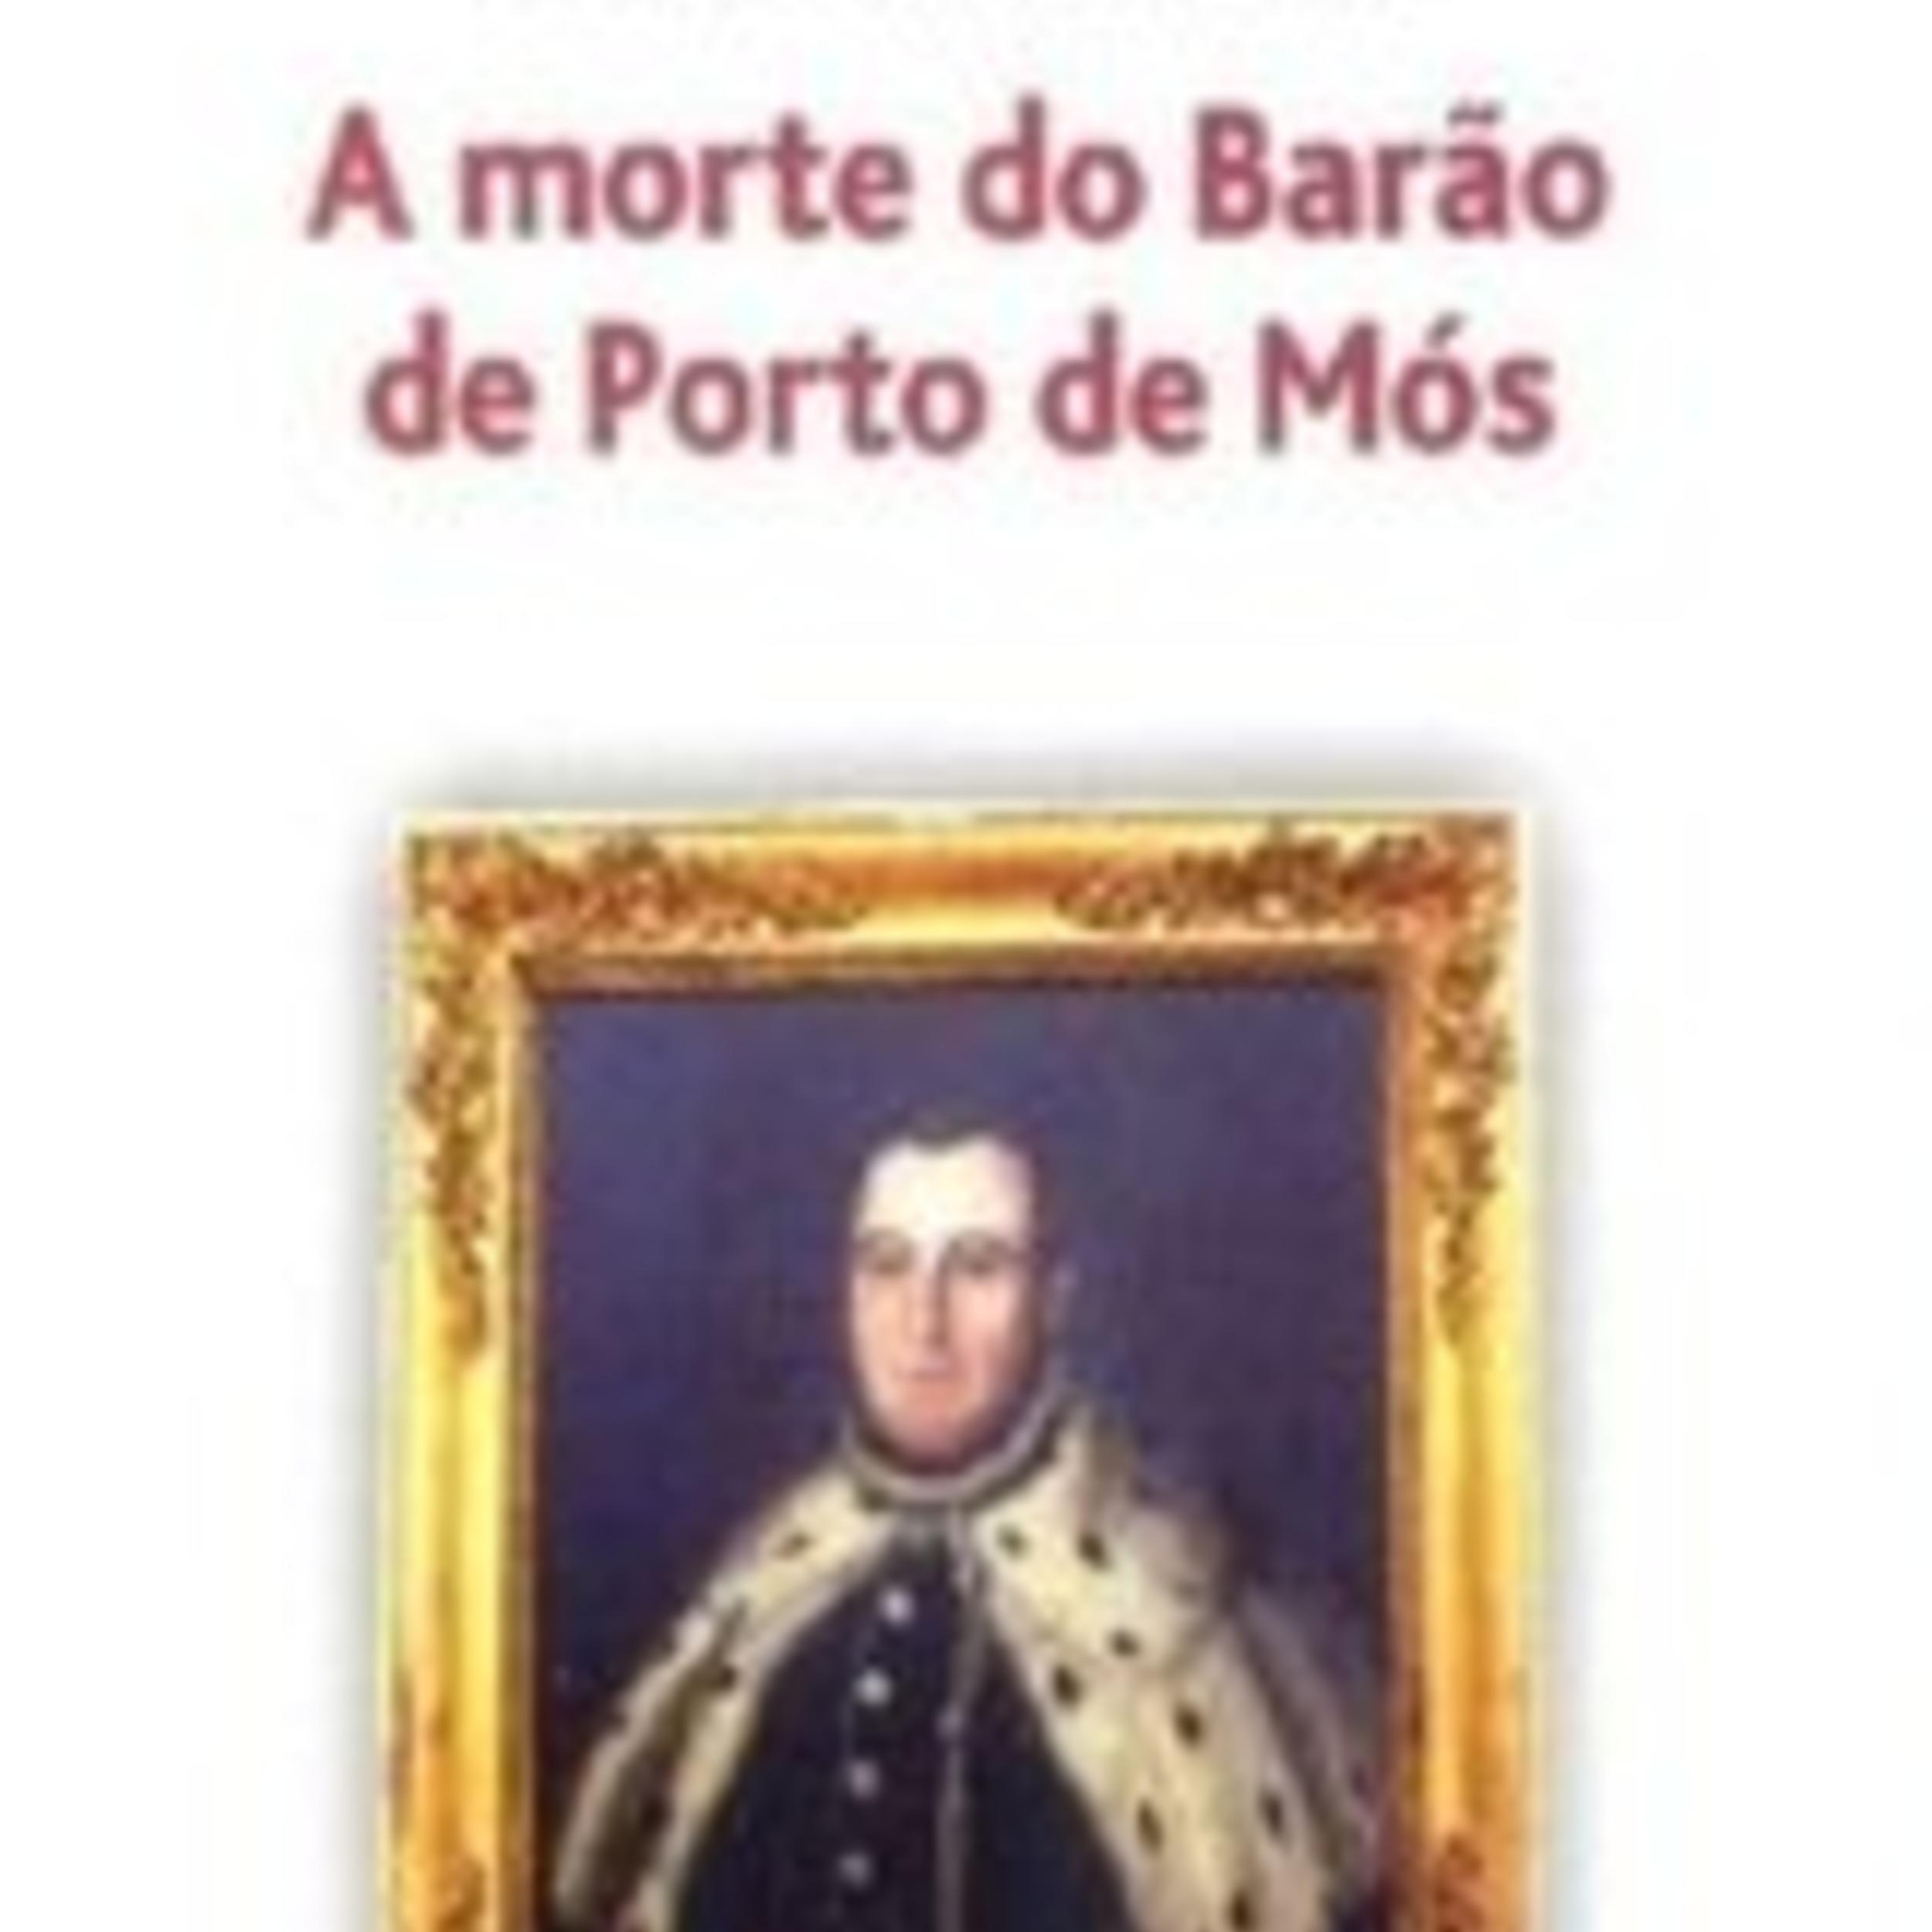 livro_a_morte_barao_porto_de_mos_1_250_250